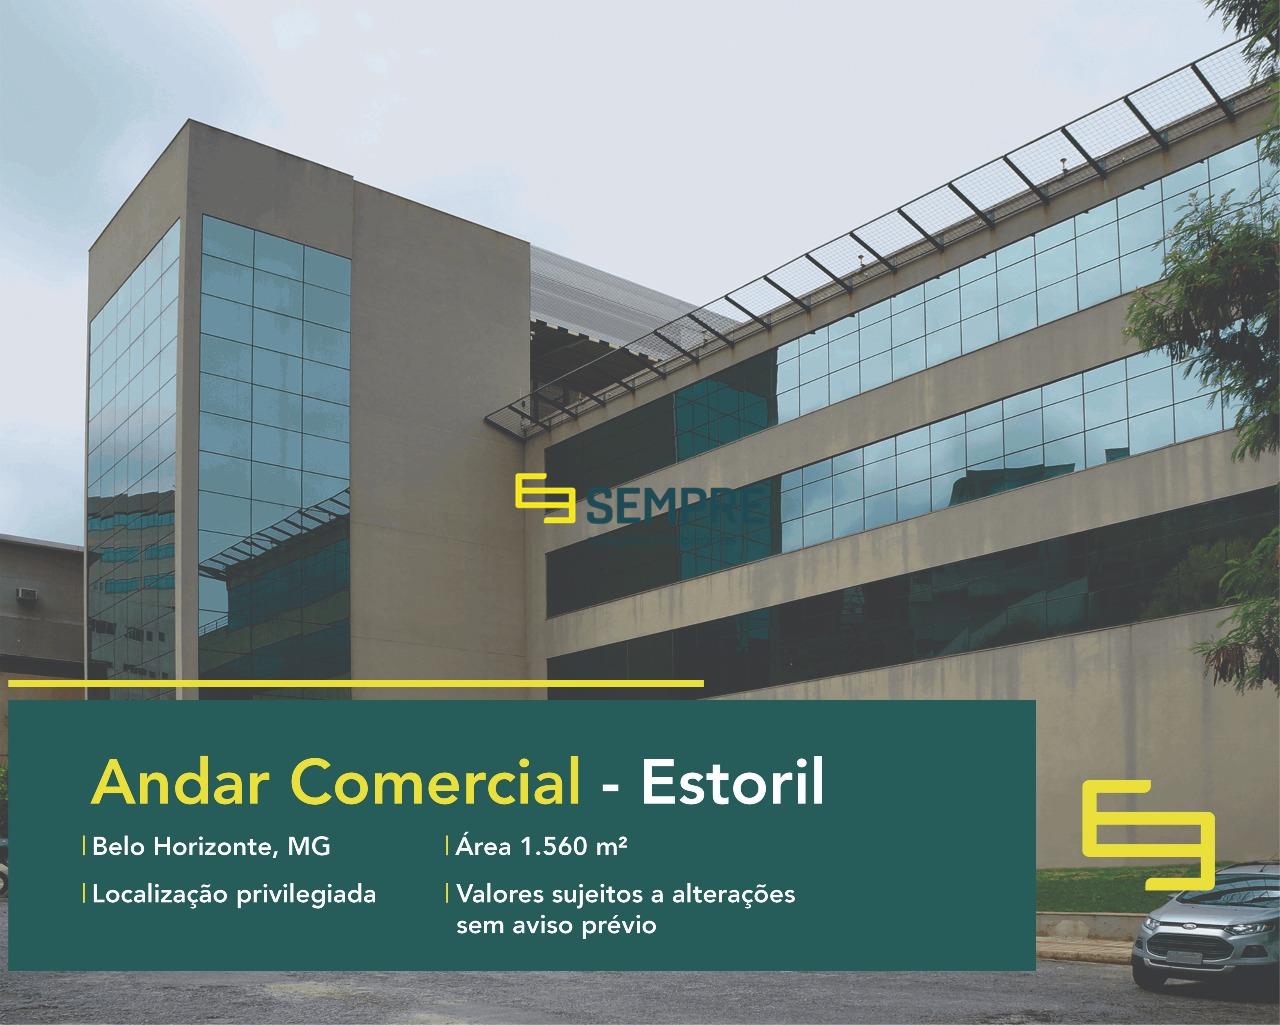 Andar corrido no Estoril para alugar em Belo Horizonte, excelente localização. O estabelecimento comercial conta com área de 1.560 m².